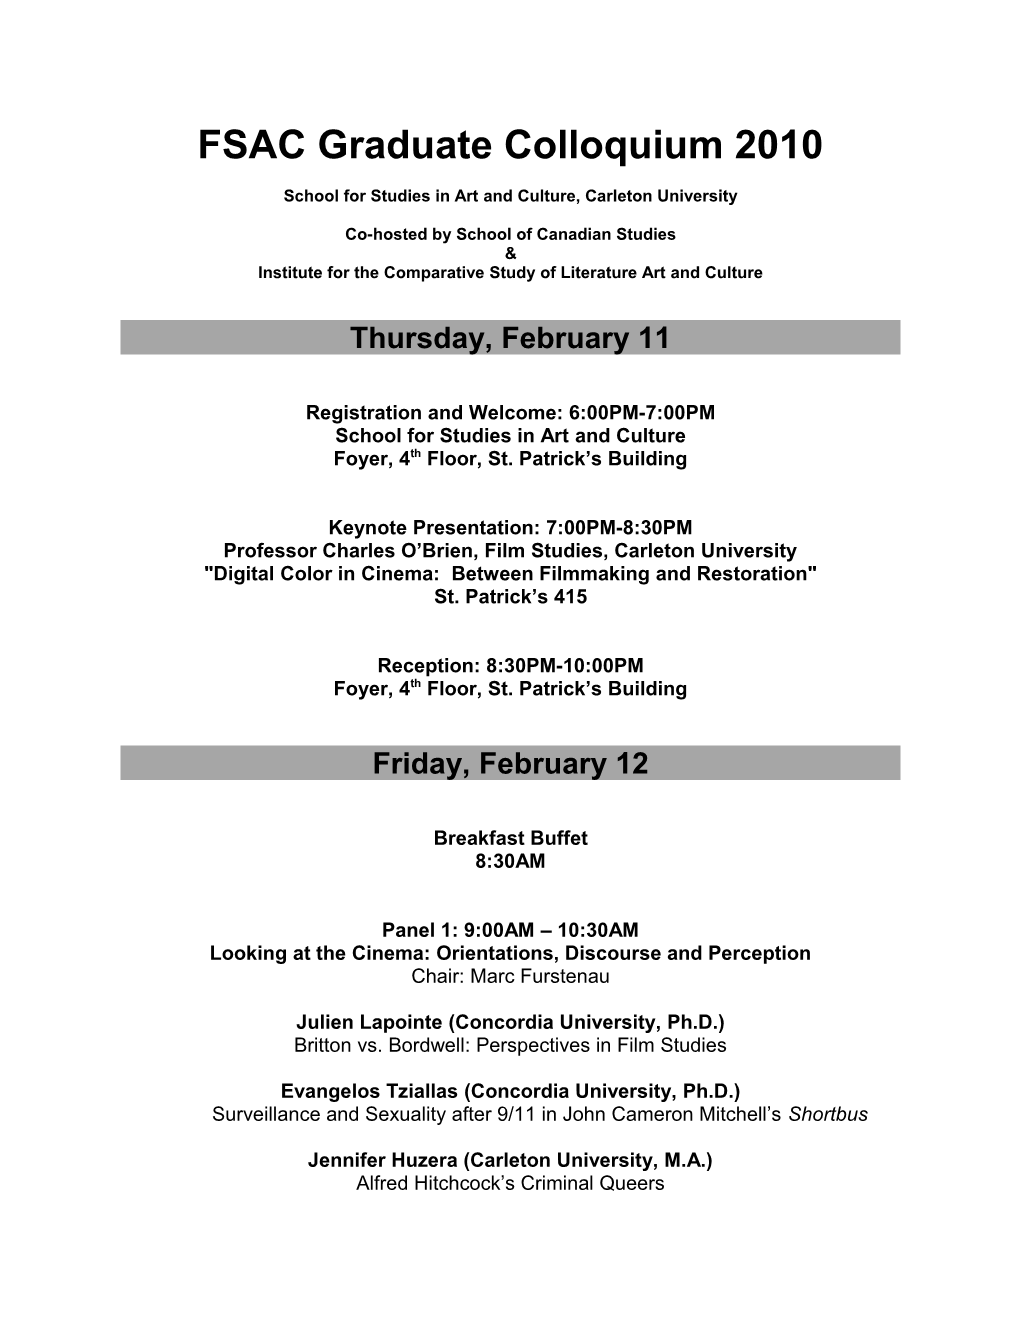 FSAC Graduate Colloquium 2010 Preliminary Schedule